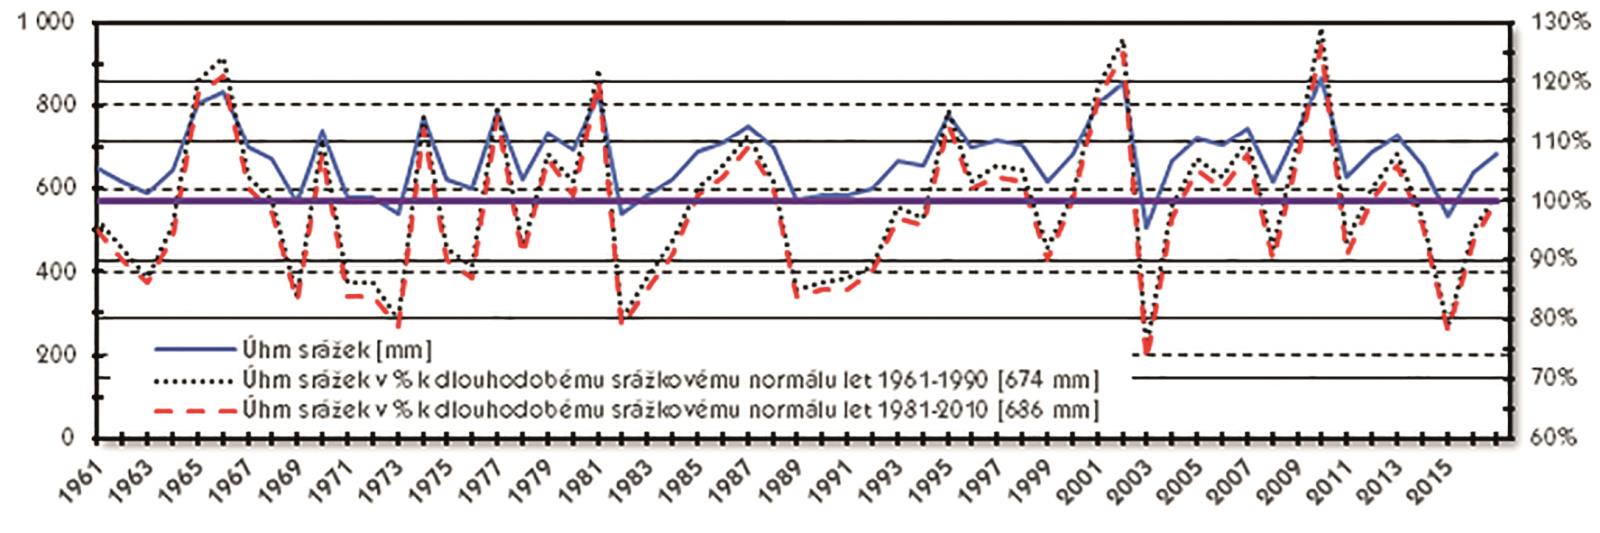 Obr. 3 Přehled úhrnu územních srážek v České republice v letech 1961-2017 (Zdrpj dat: ČHMÚ, 2018)